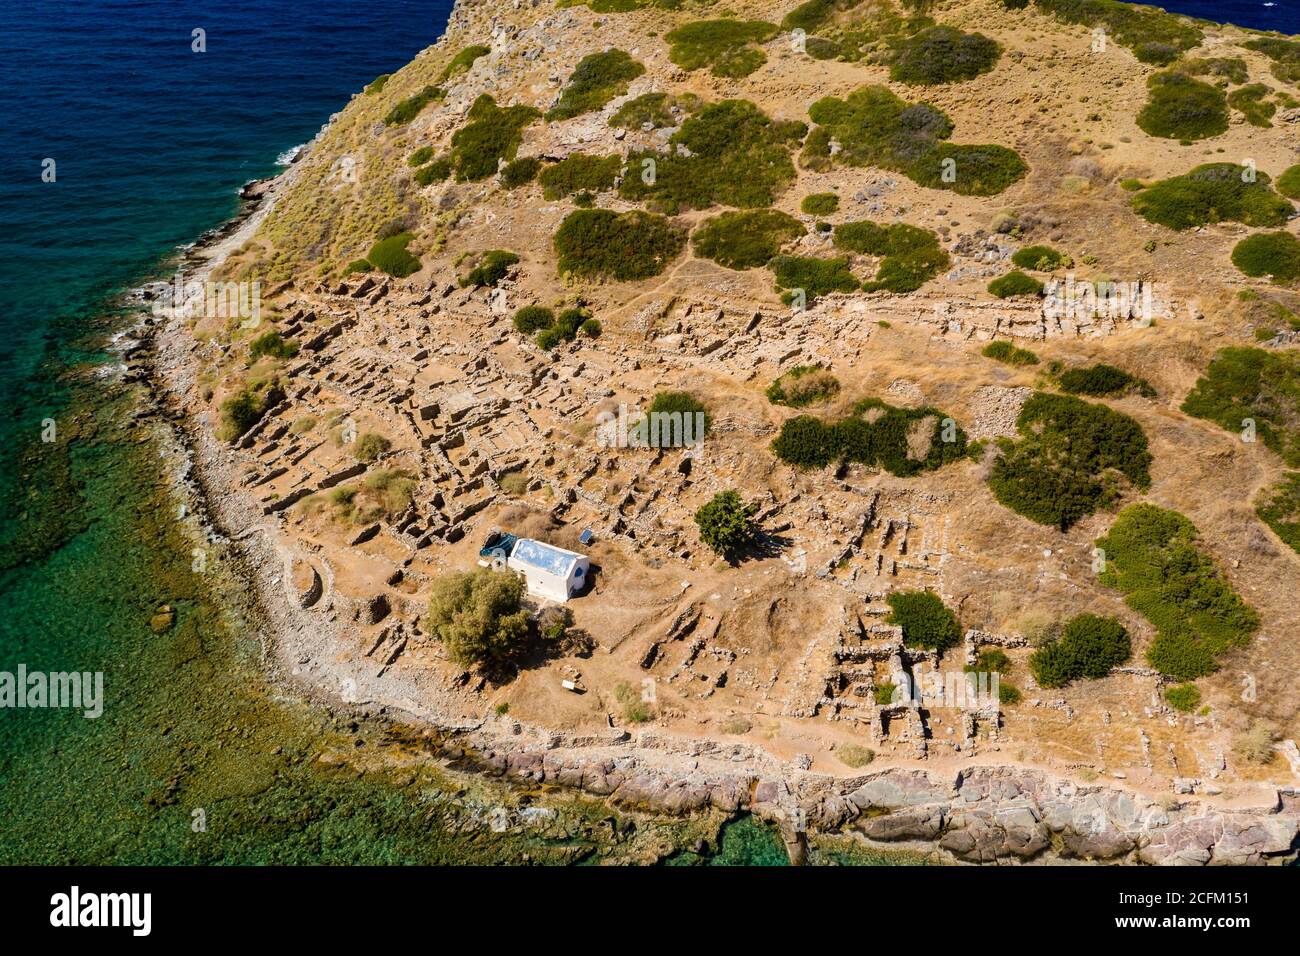 Vue aérienne d'une ancienne ville portuaire de Minoan sur une île entourée d'un océan limpide (Mochlos, Crète, Grèce) Banque D'Images